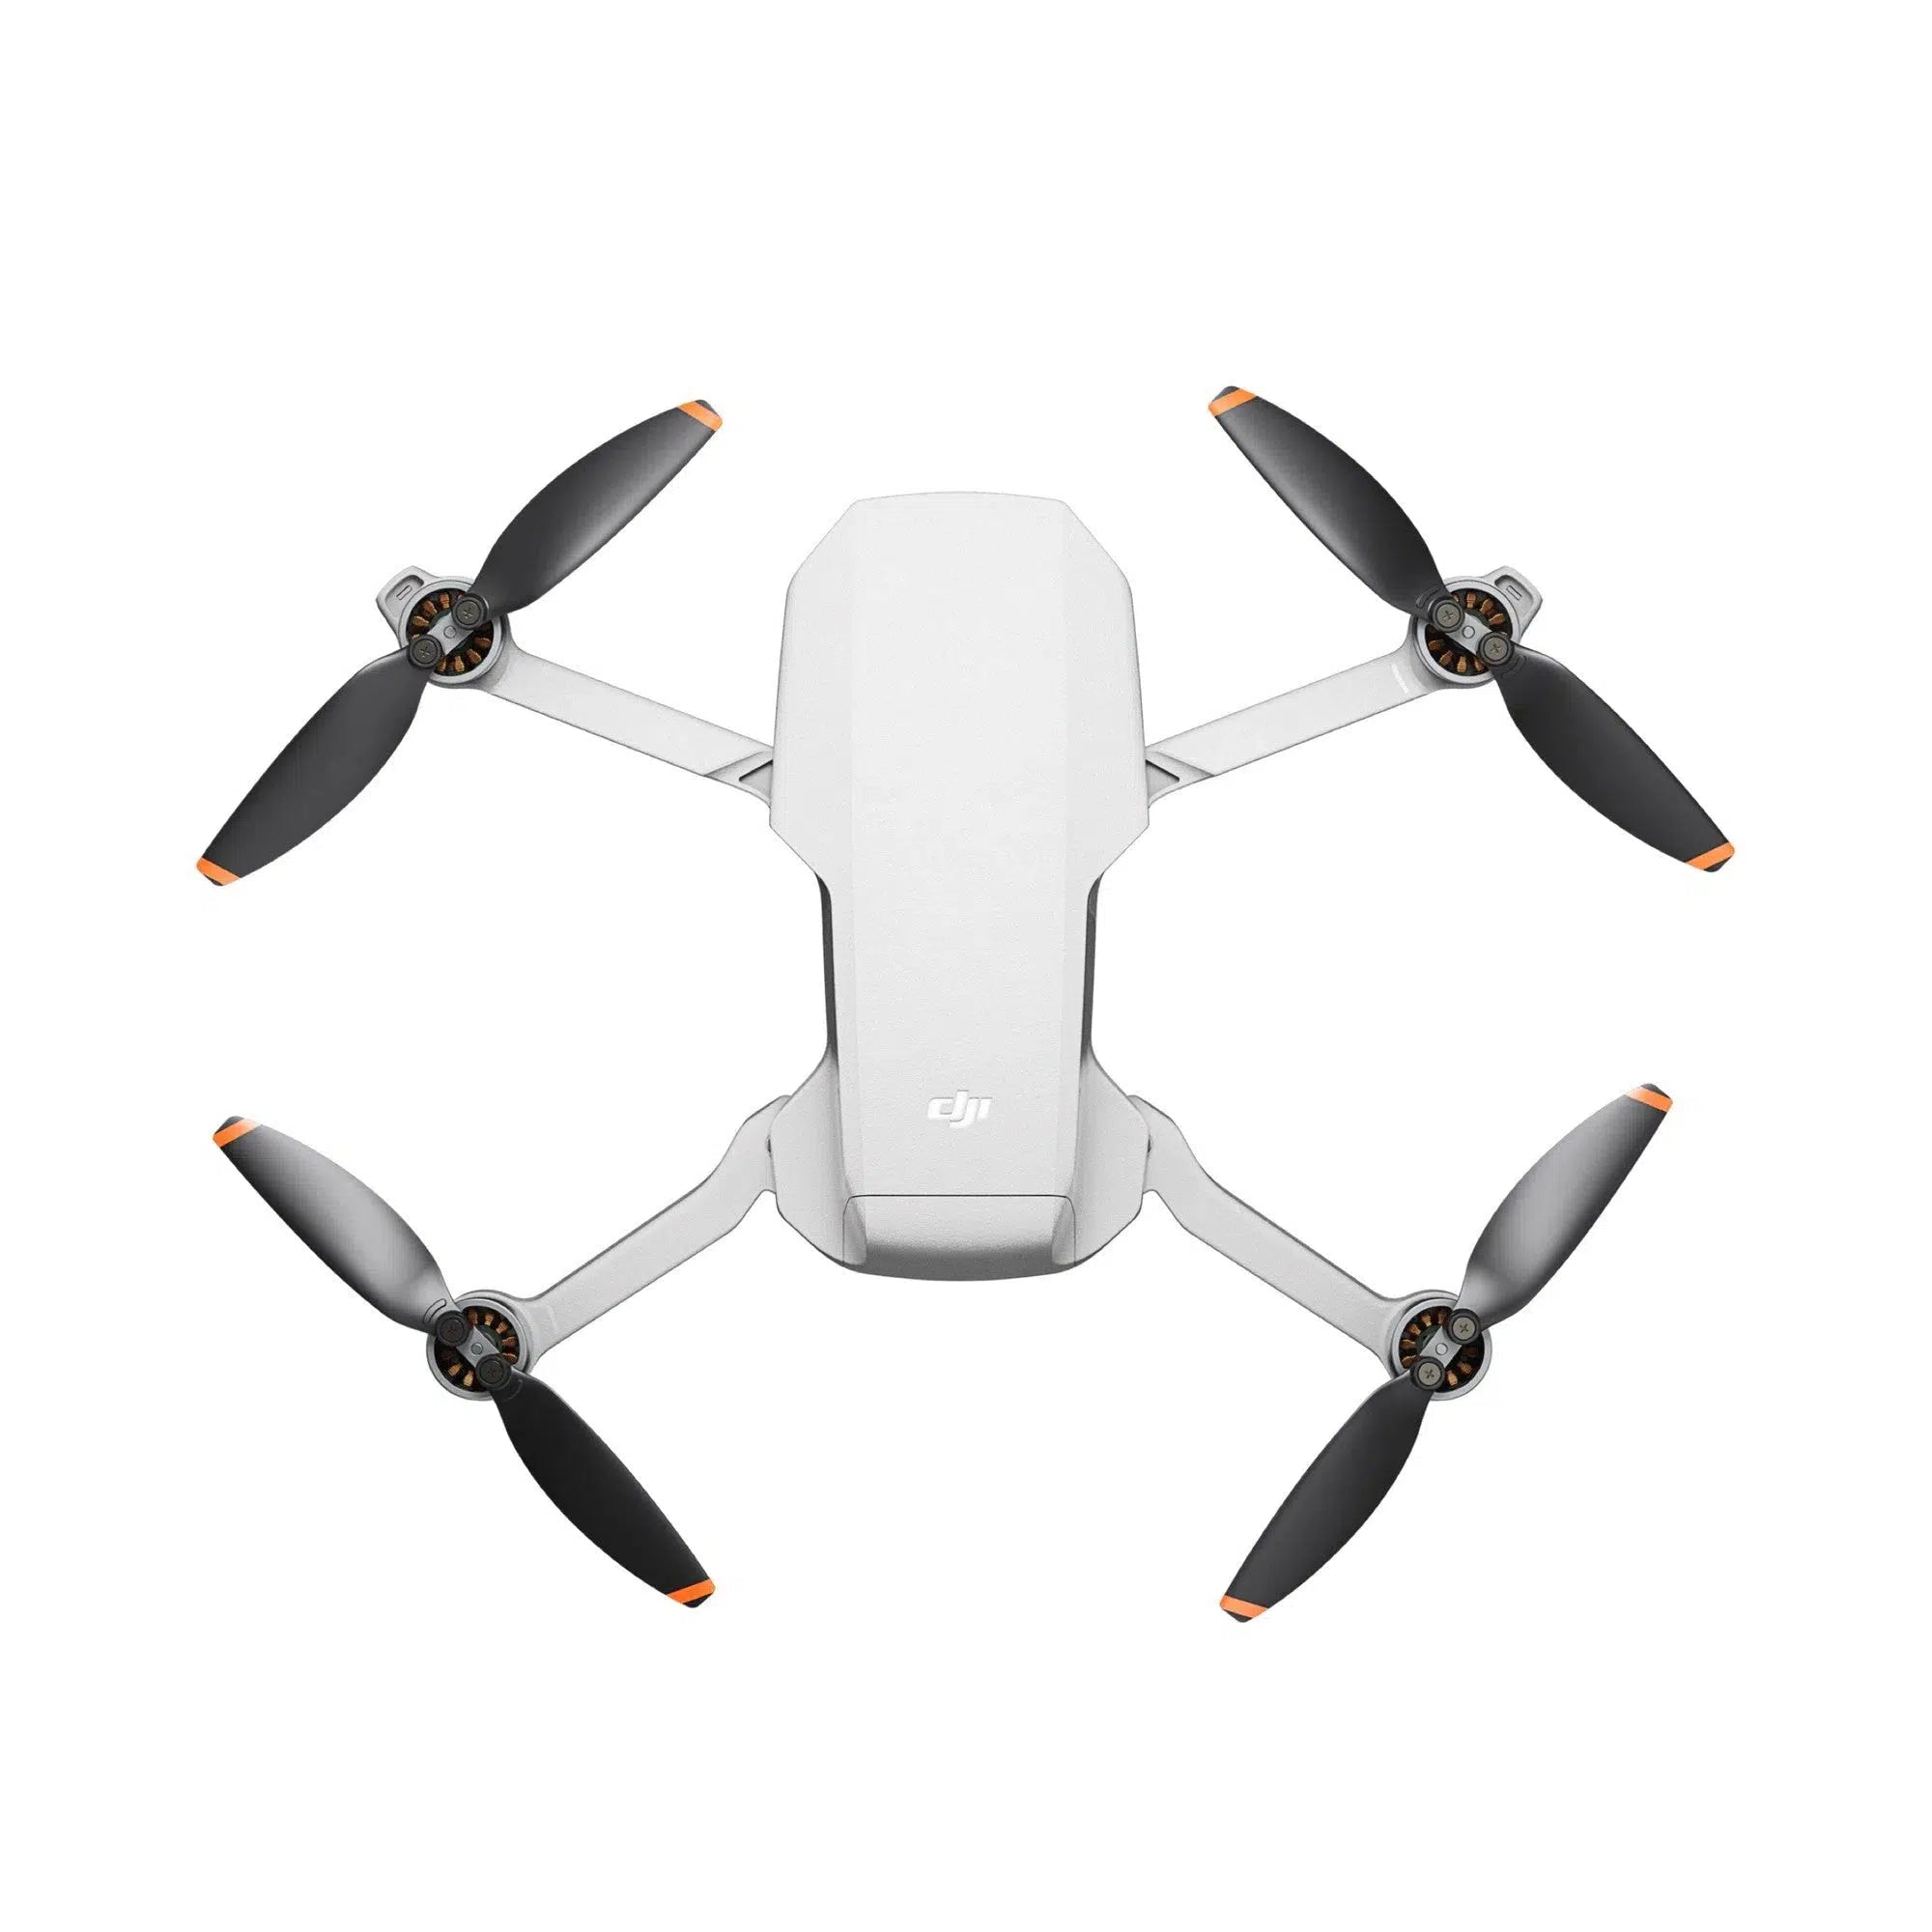 DJI Mini 2 SE Drone with RC-N1 Controller